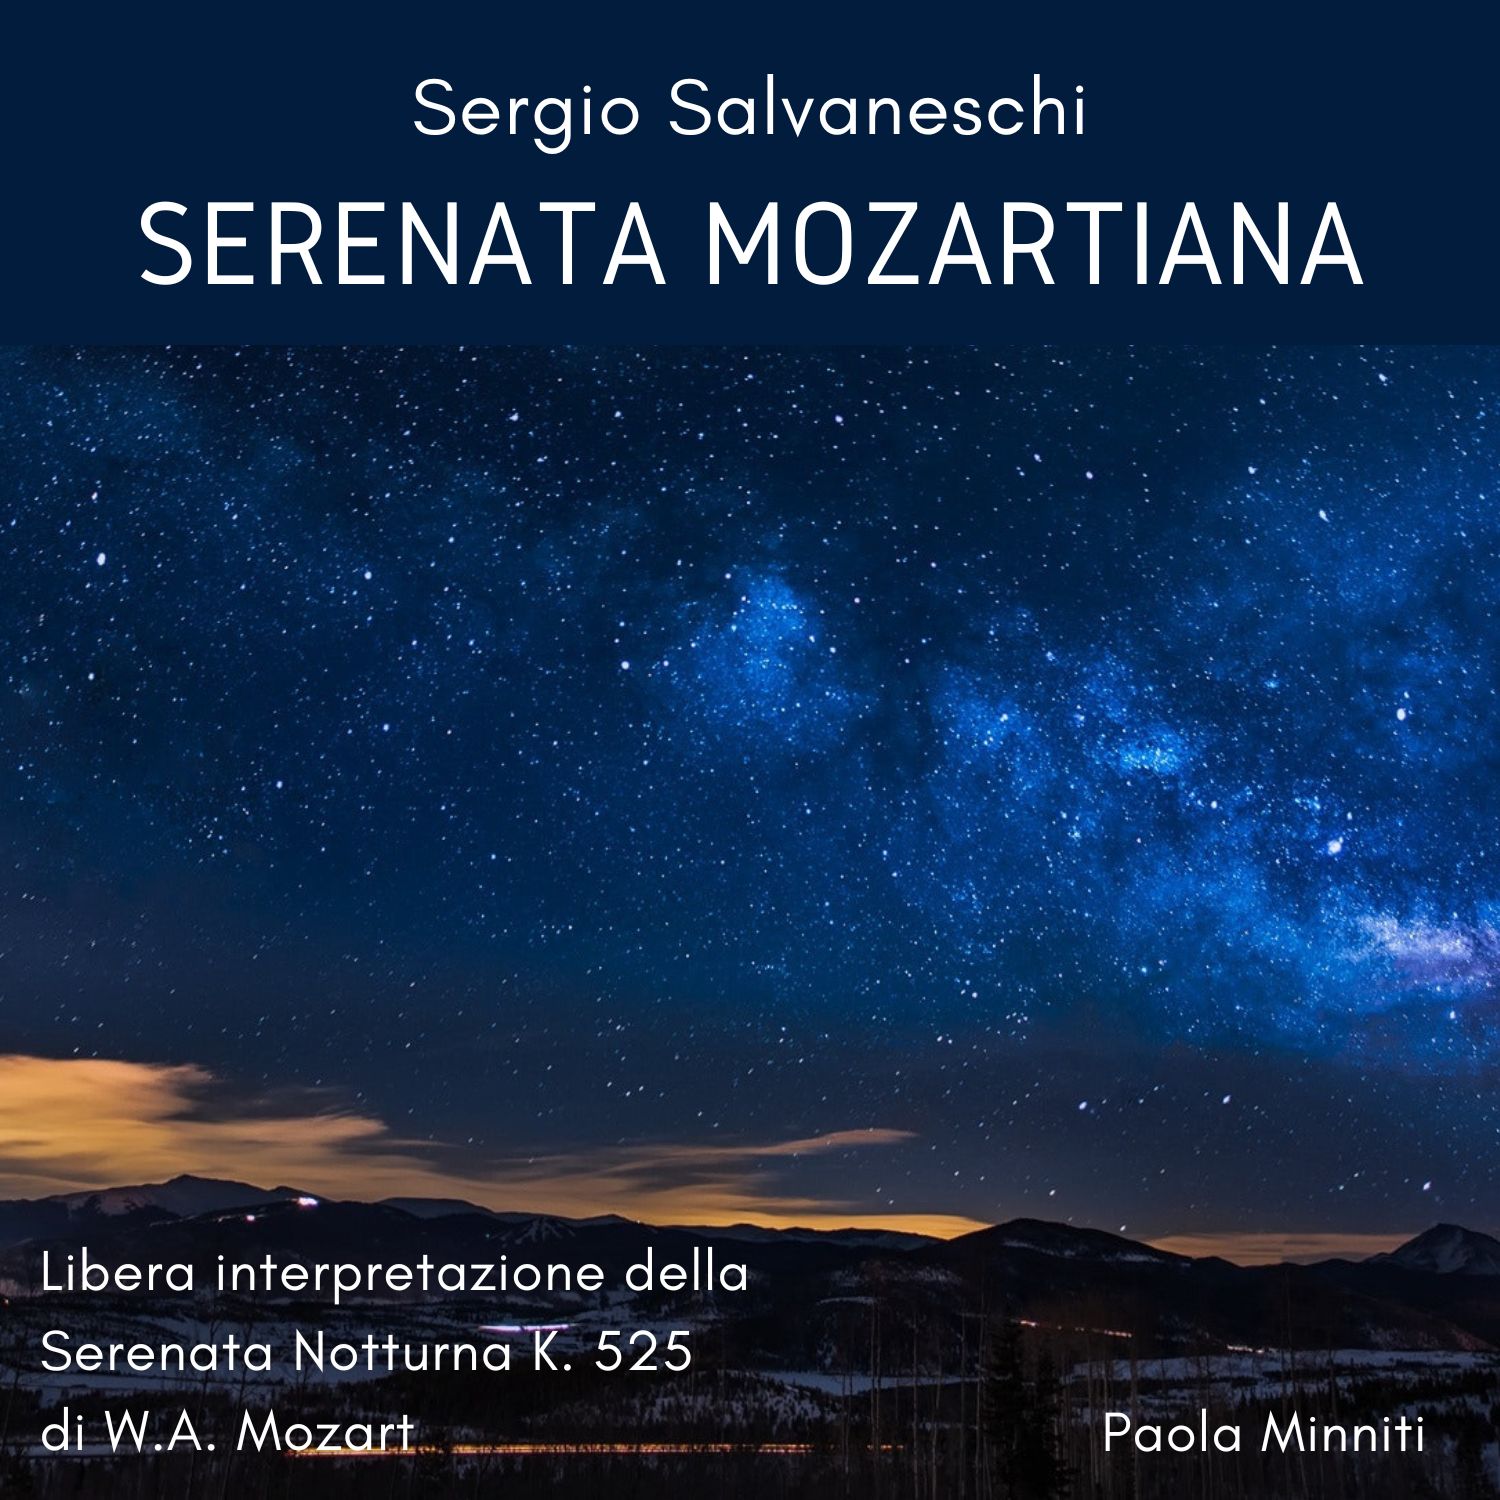 Serenata Mozartiana (Libera interpretazione della Serenata Notturna K. 525 di W.A. Mozart)